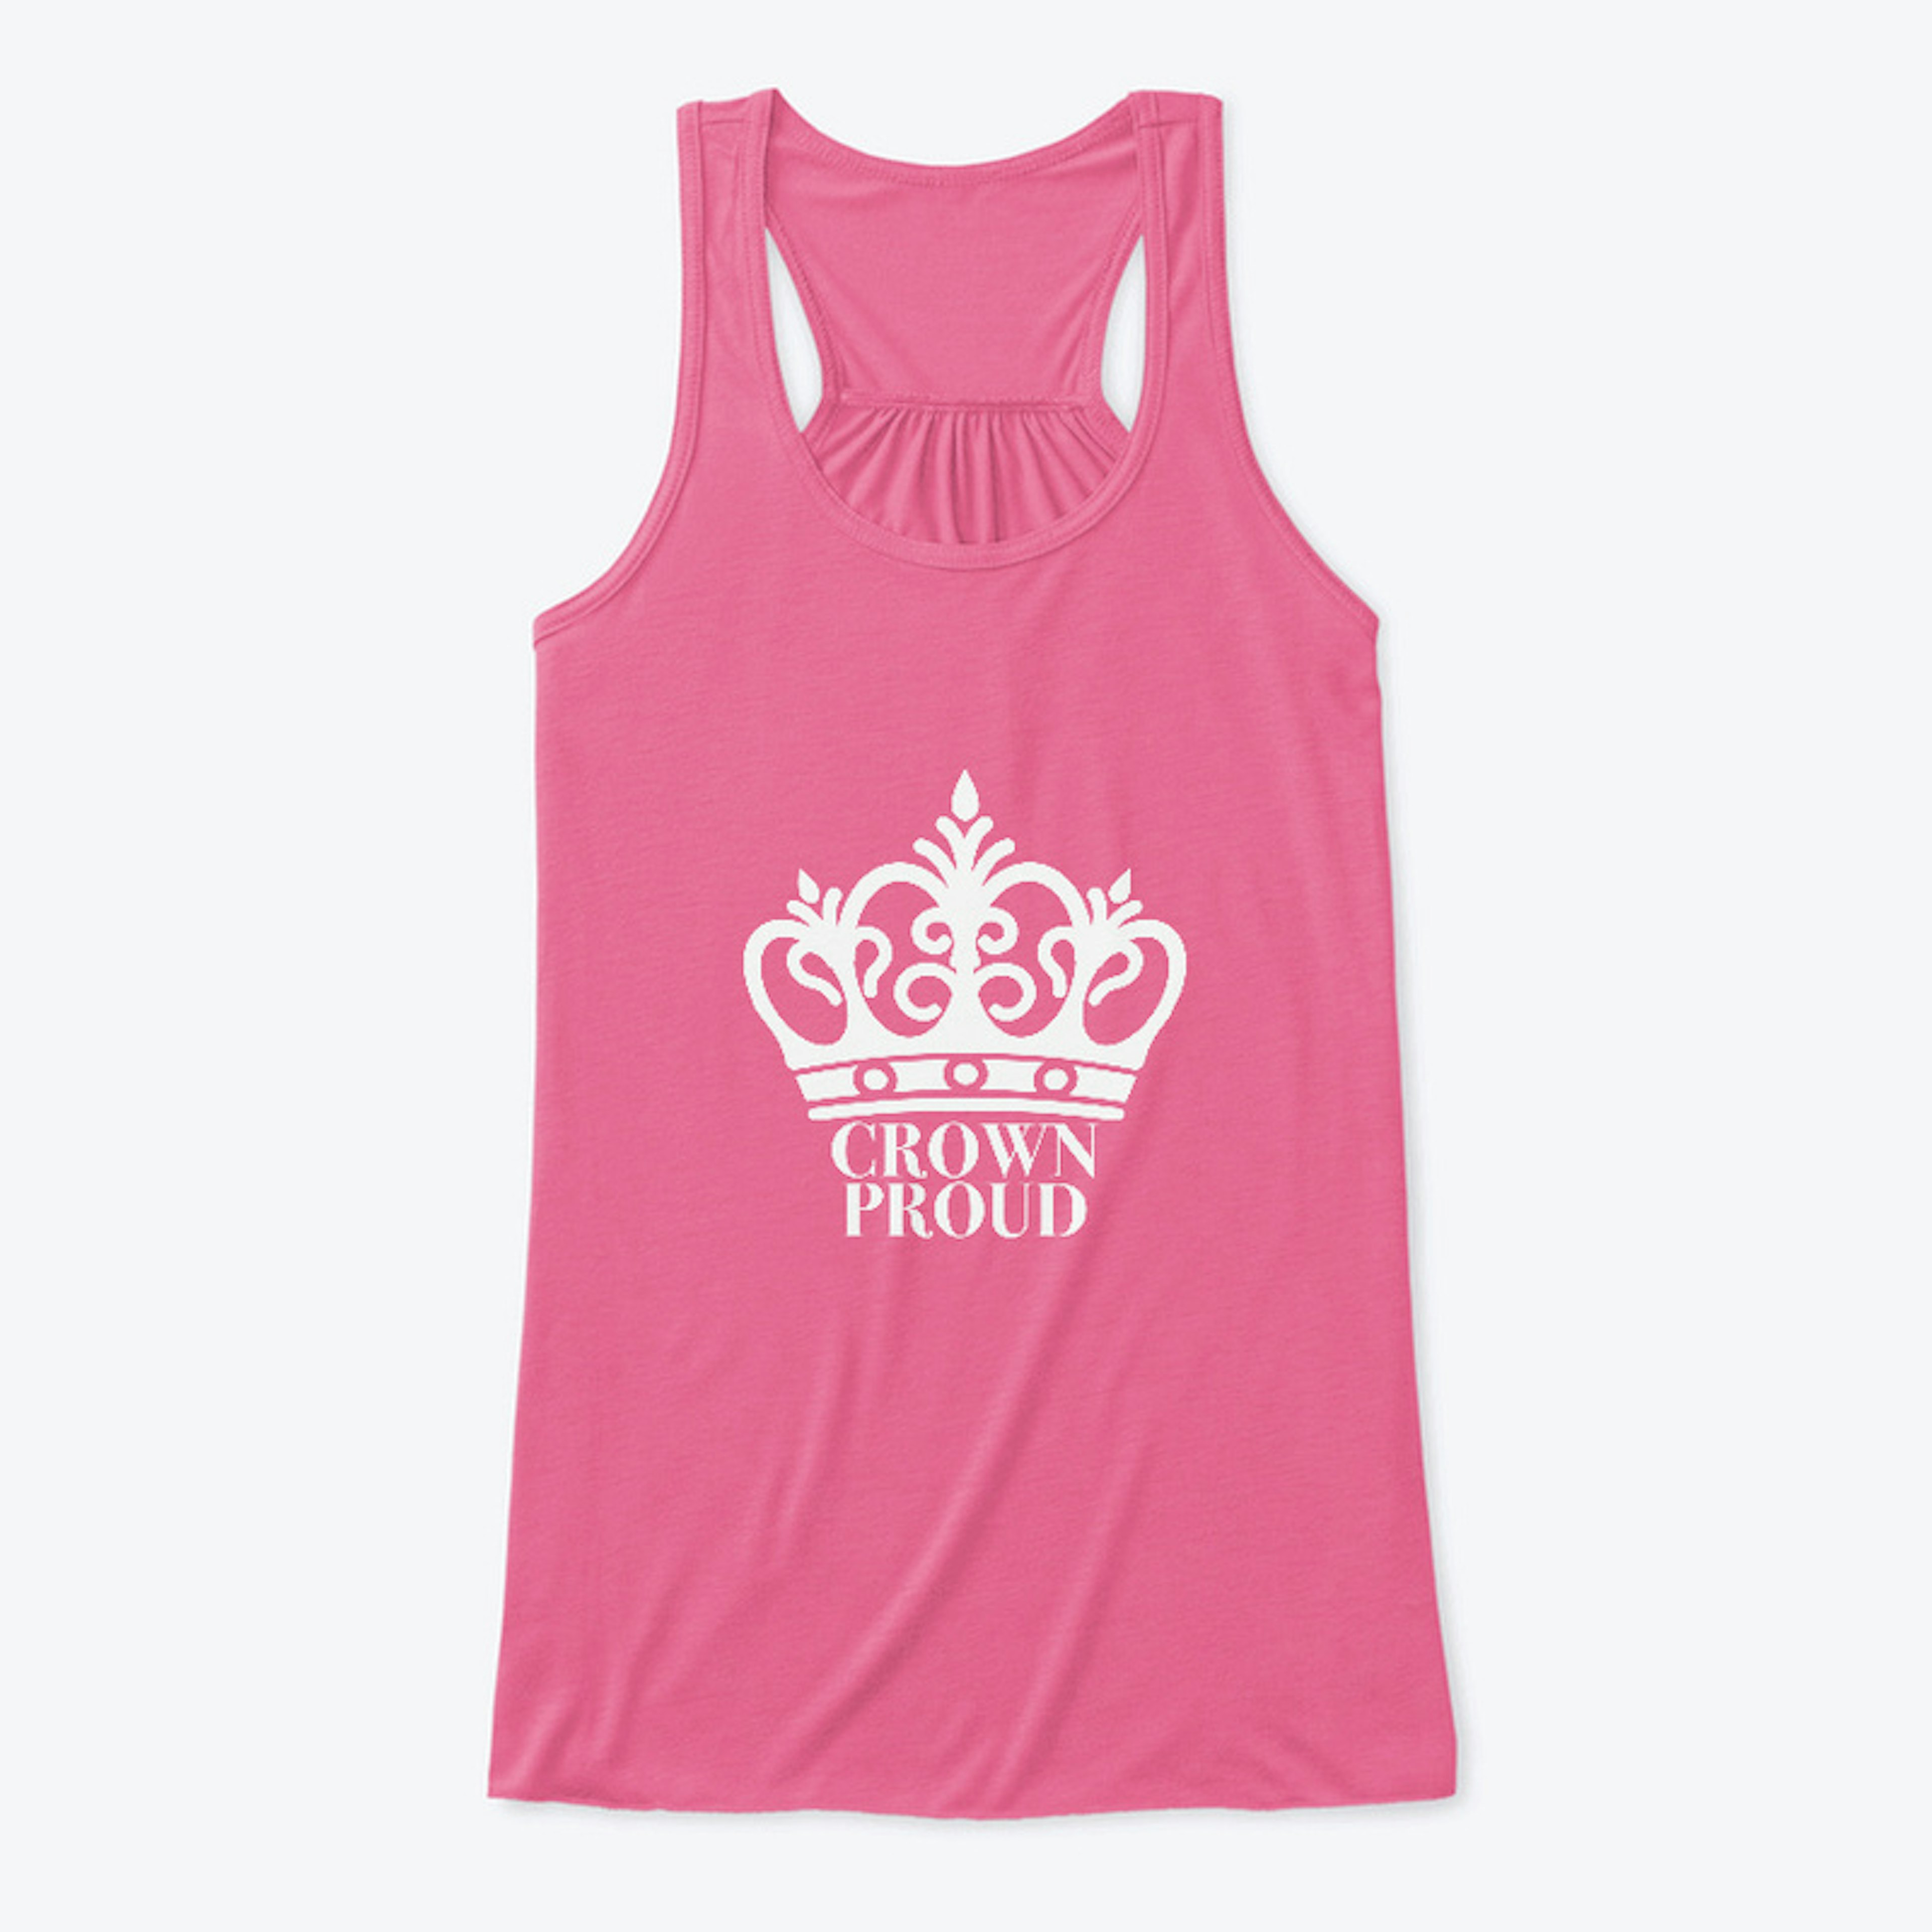 Crown Proud Women's Tank Top-white logo